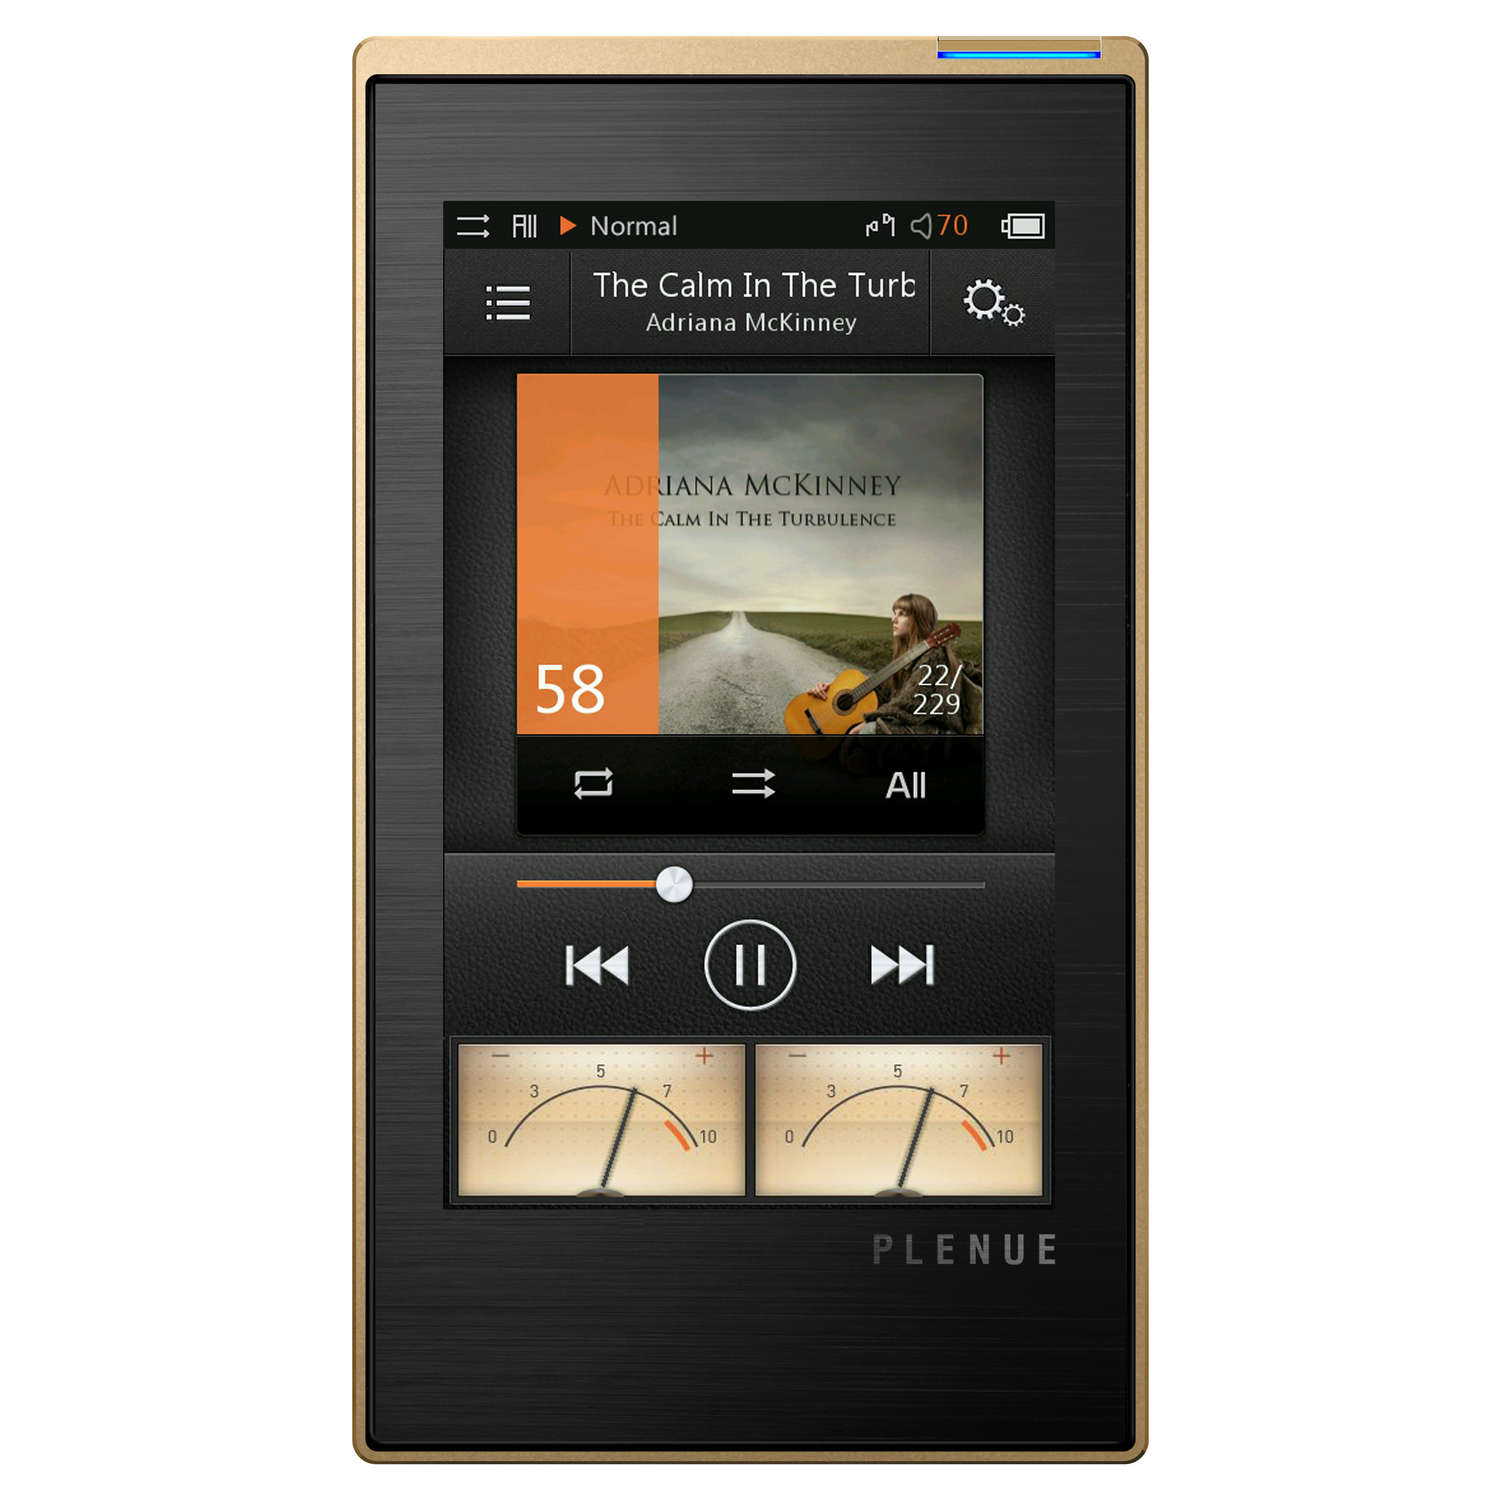  COWON  PLENUE 1 Gold Lecteur MP3 iPod Cowon  sur LDLC com